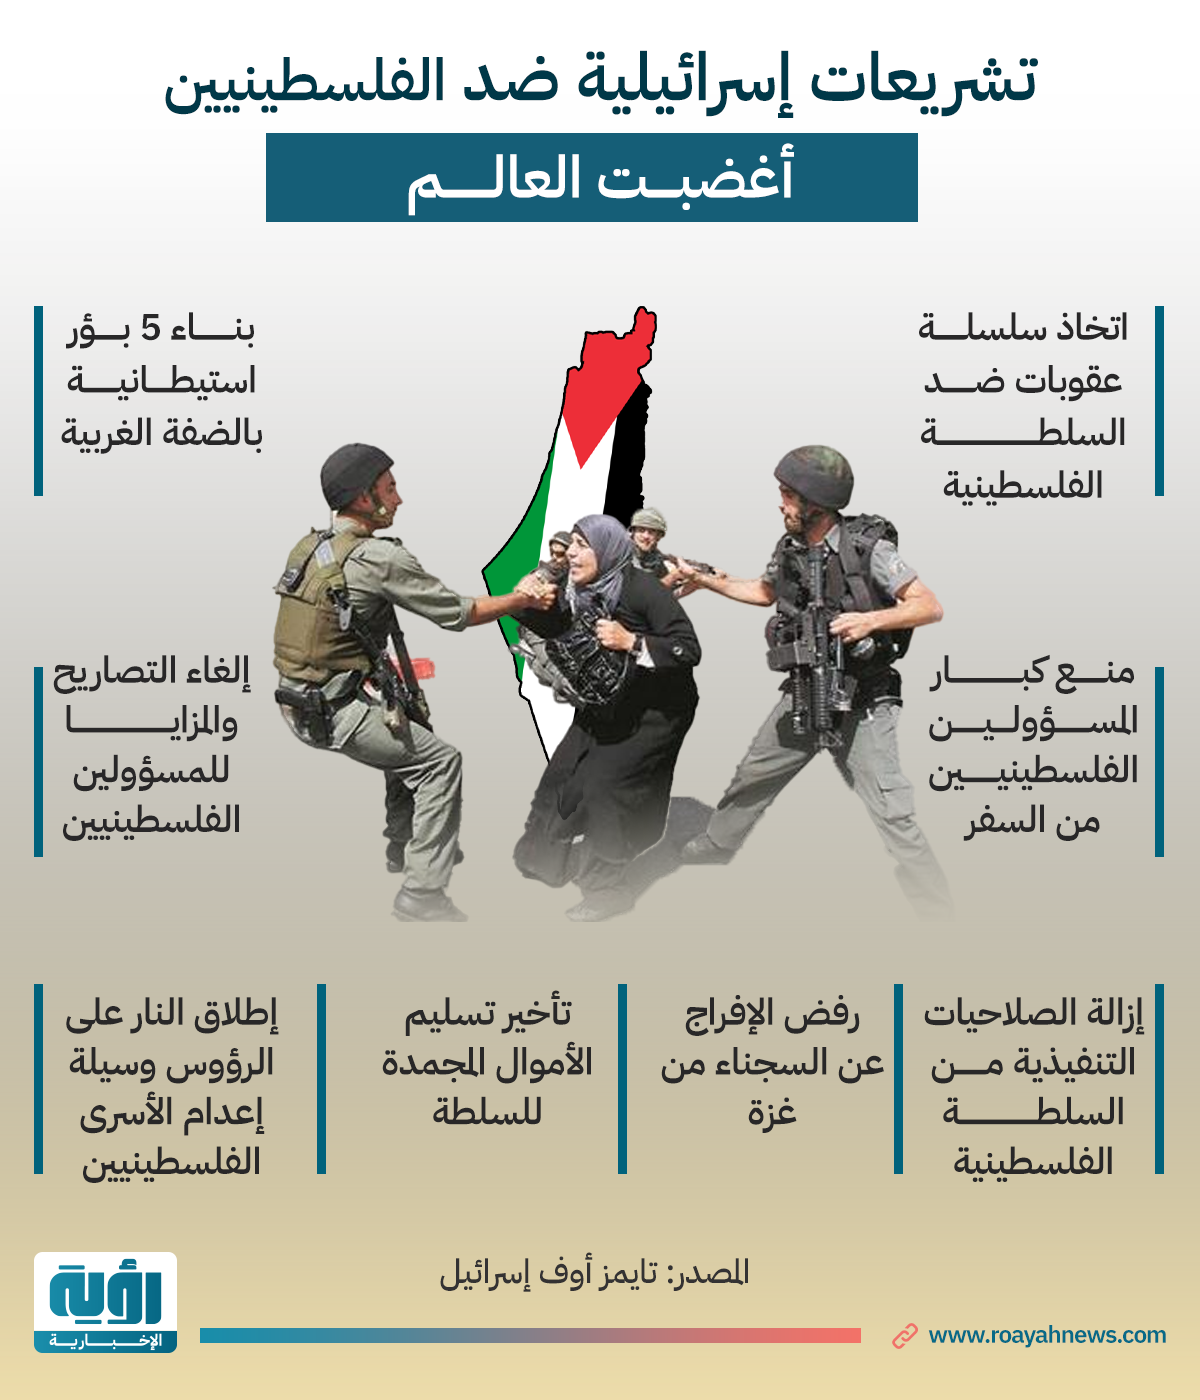 تشريعات-إسرائيلية-ضد-الفلسطينيين-أغضبت-العالم (2)